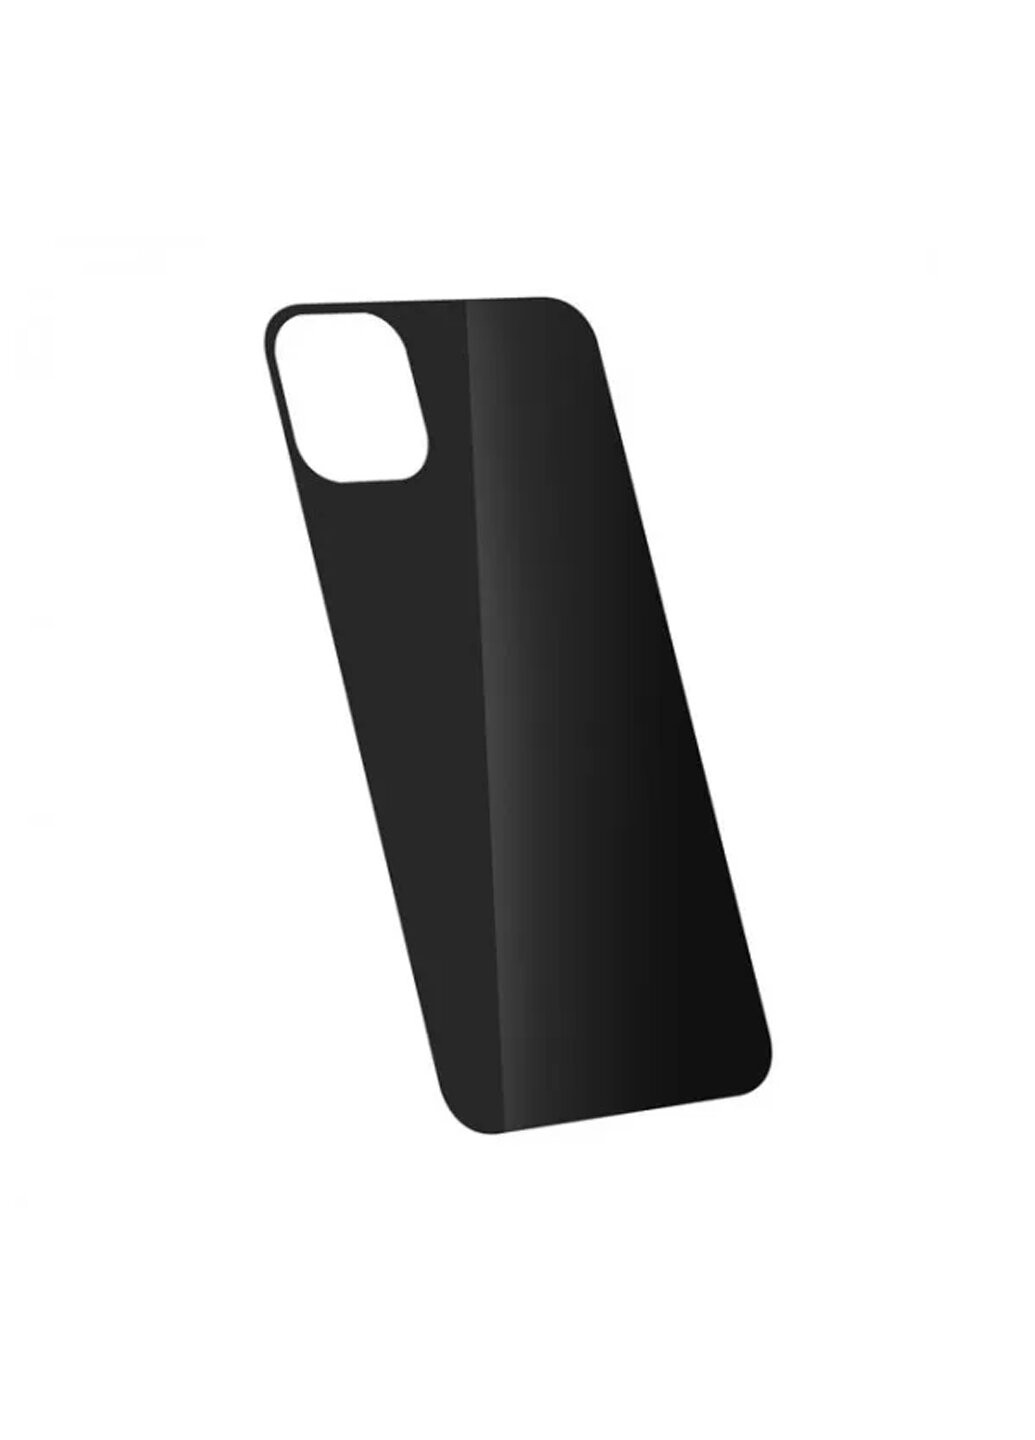 Стекло защитное на заднюю панель цветное глянцевое для iPhone 11 Pro Max Black CAA (220511359)